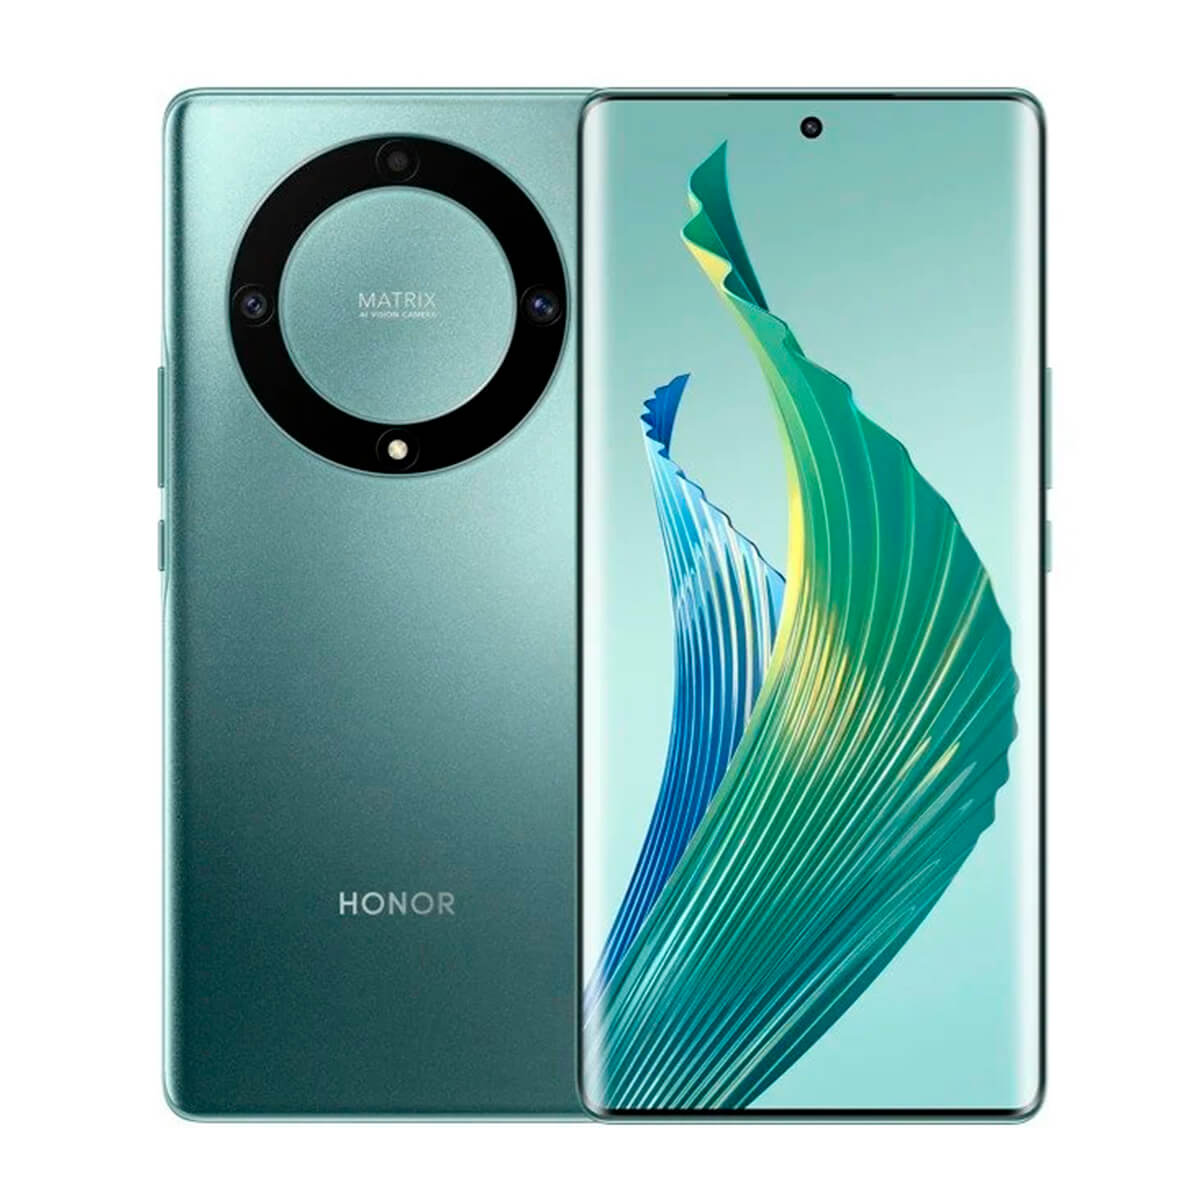 Honor Magic5 Lite 5G 8GB/256GB Verde (Emerald Green) Dual SIM RMO-NX1